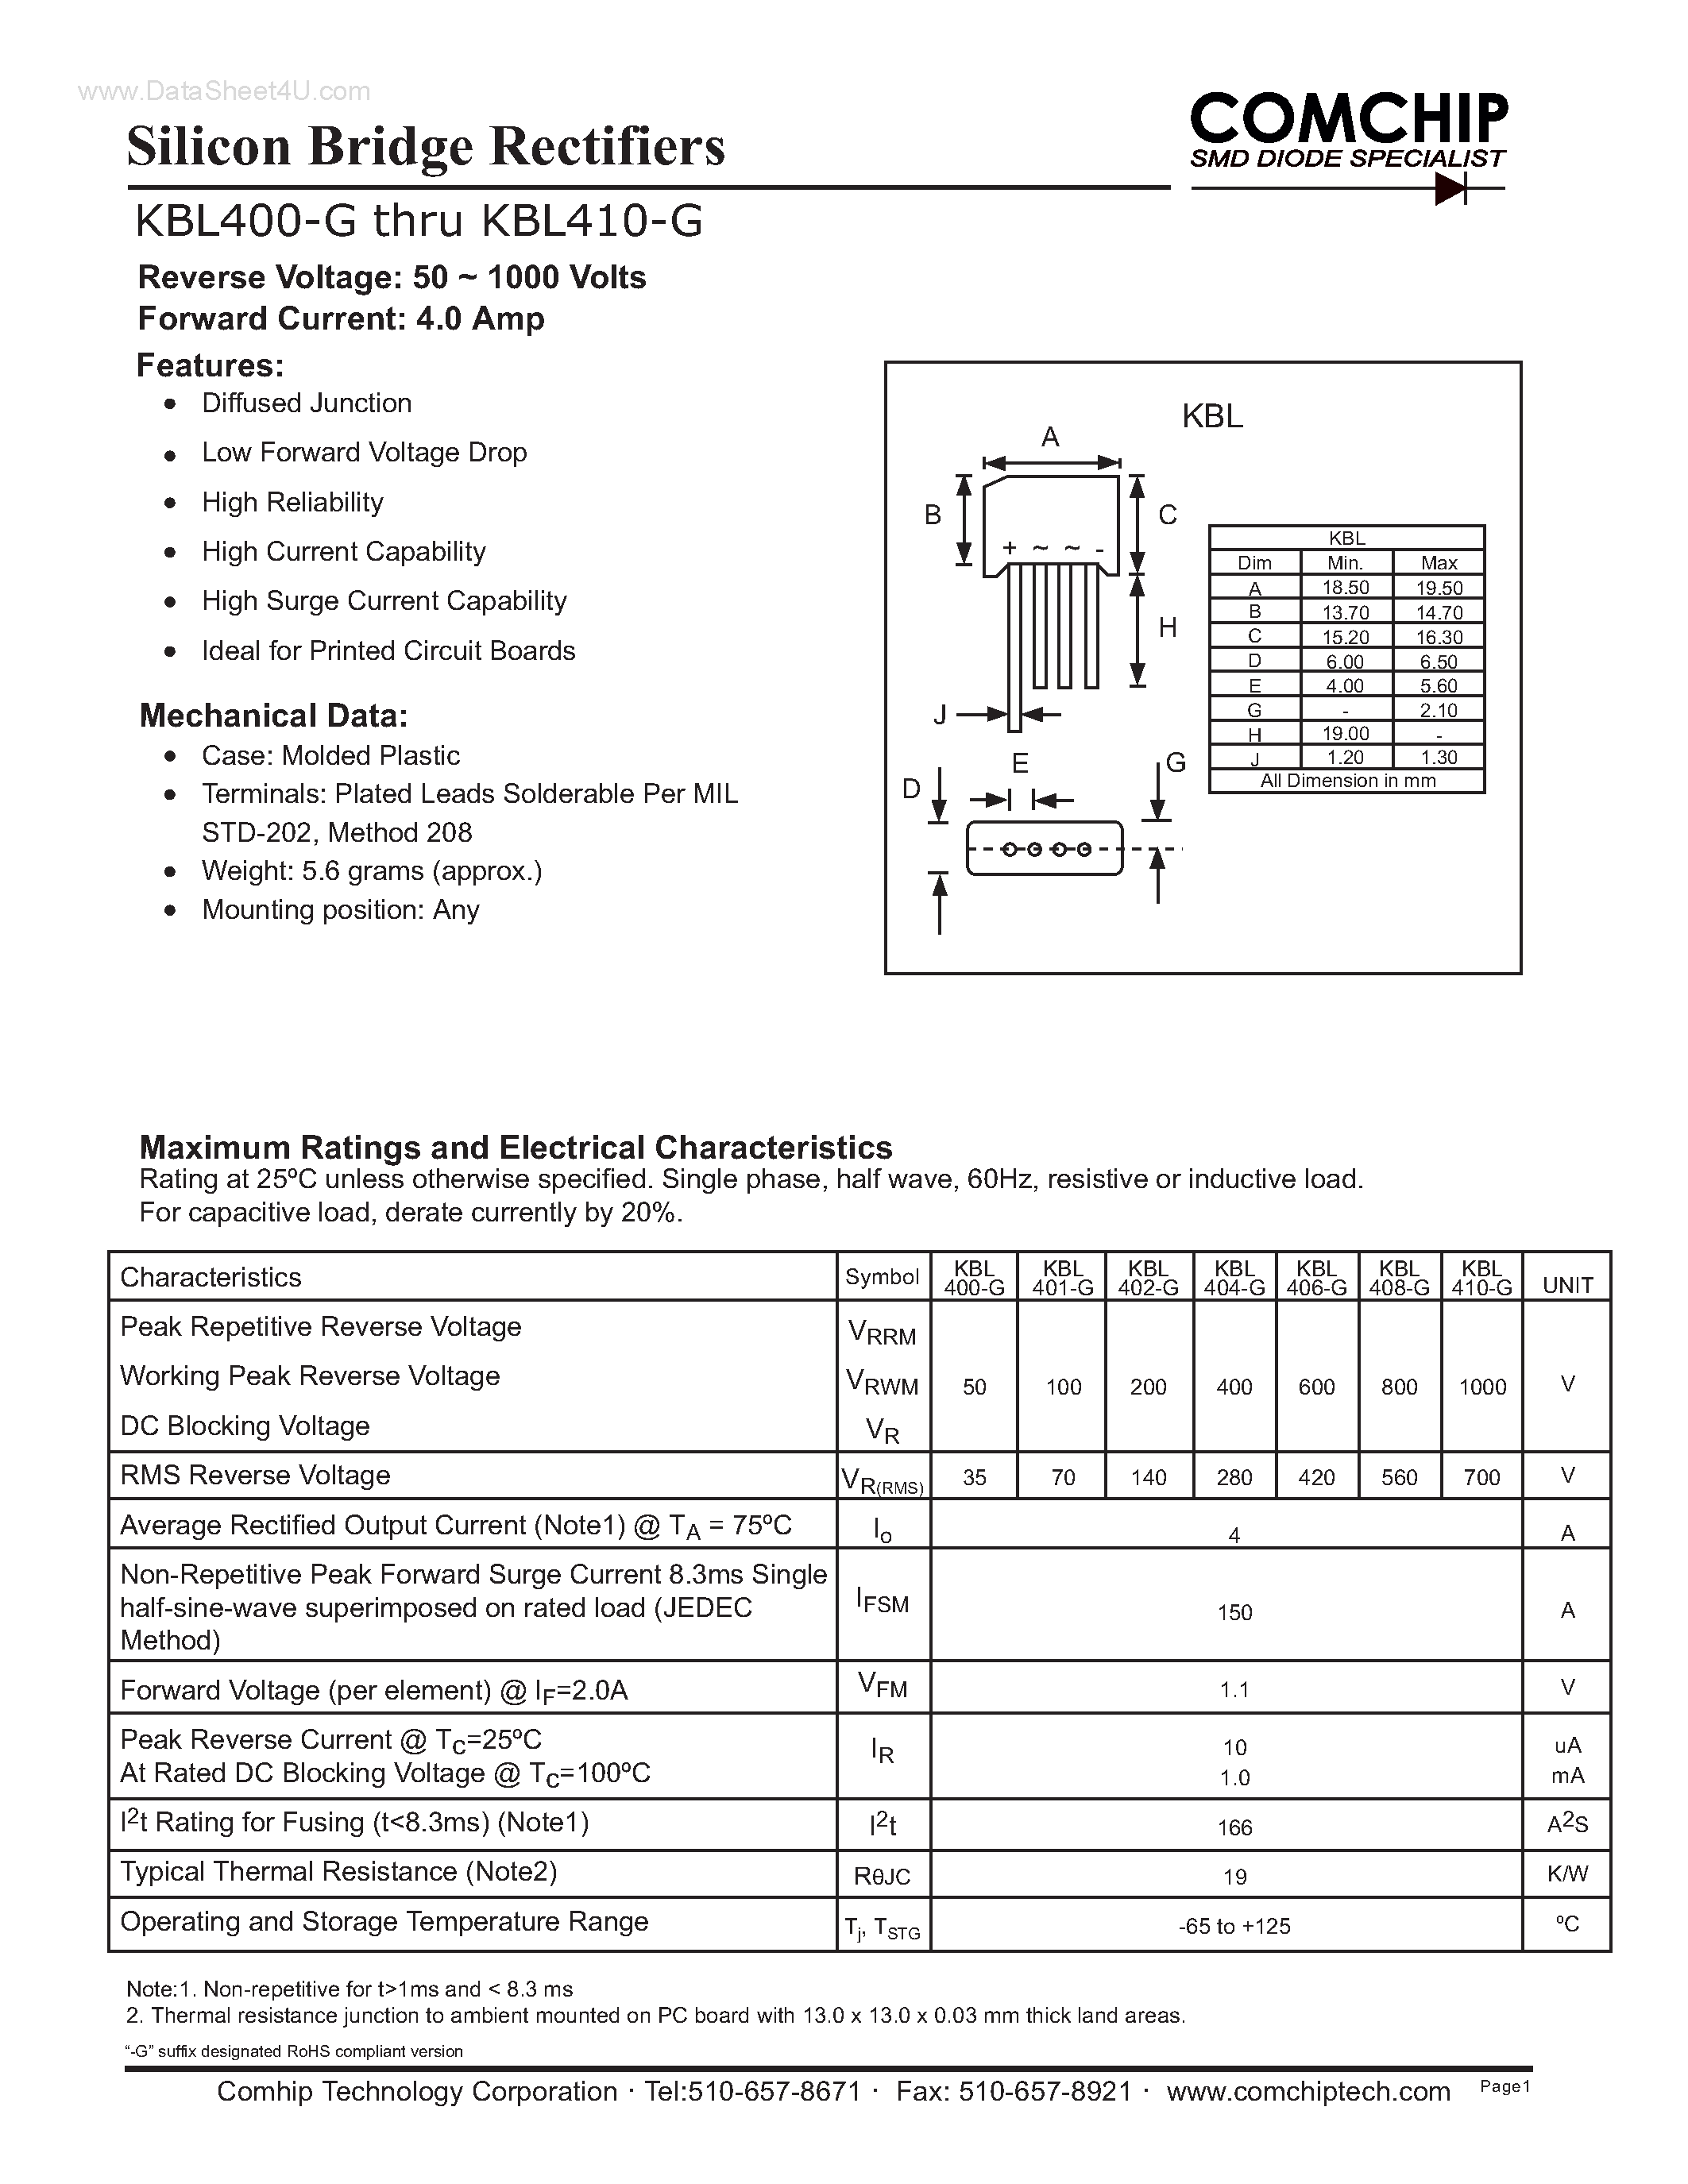 Даташит KBL400-G - (KBL400-G - KBL410-G) Silicon Bridge Rectifiers страница 1